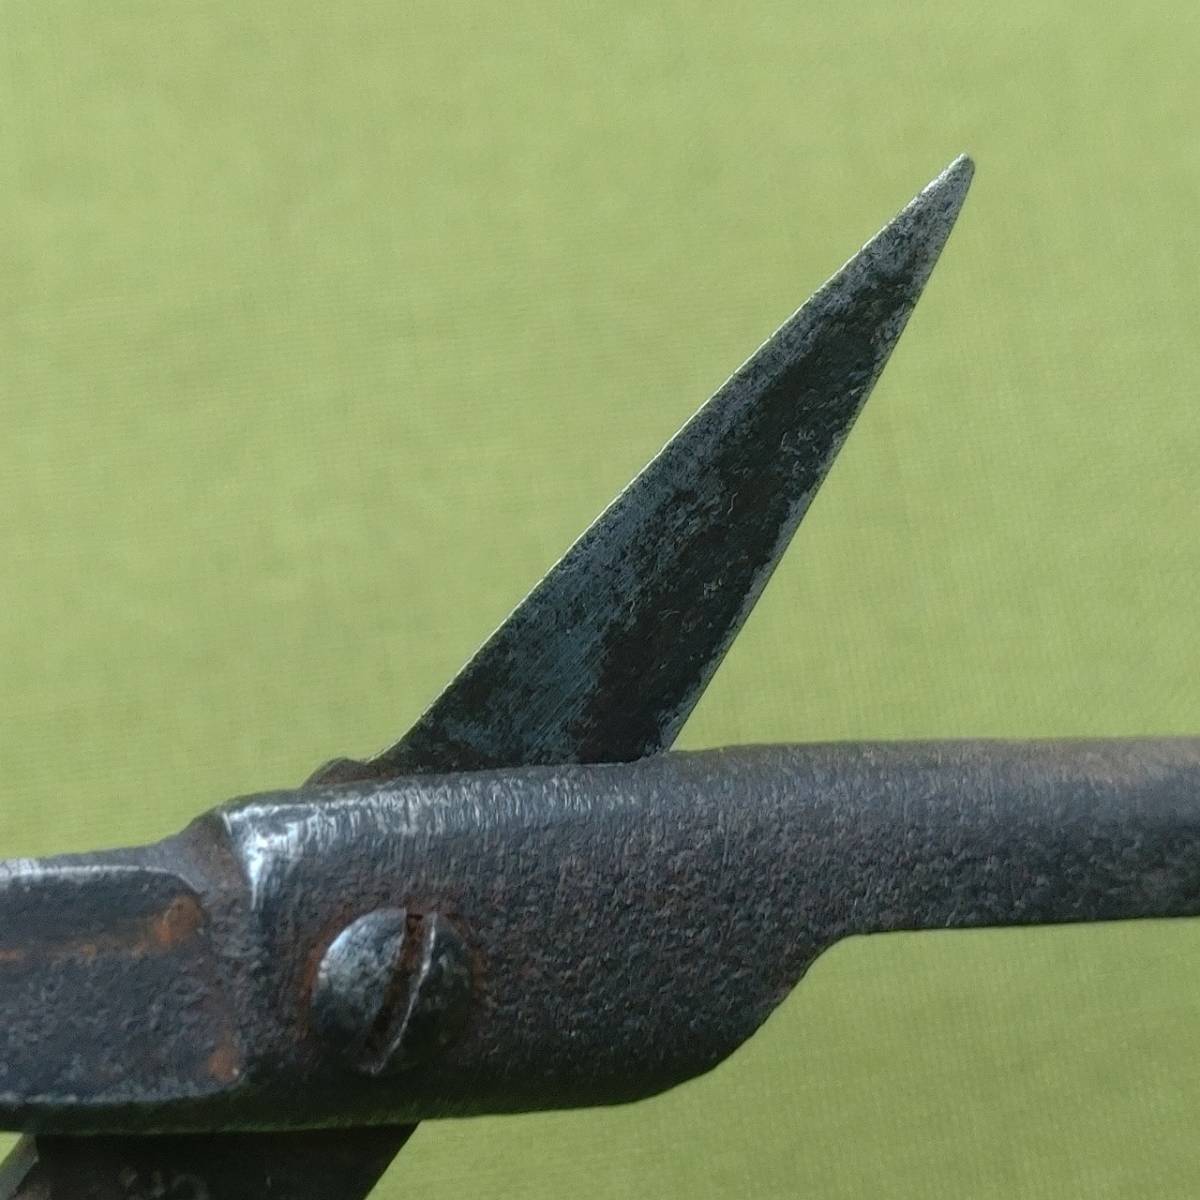  бонсай . обрезка . общая длина примерно 168. ветка порез .... цветок порез . растение . инструмент для ландшафтного дизайна инструменты для бонсай сделано в Японии Japanese pruning shears [1143][b]